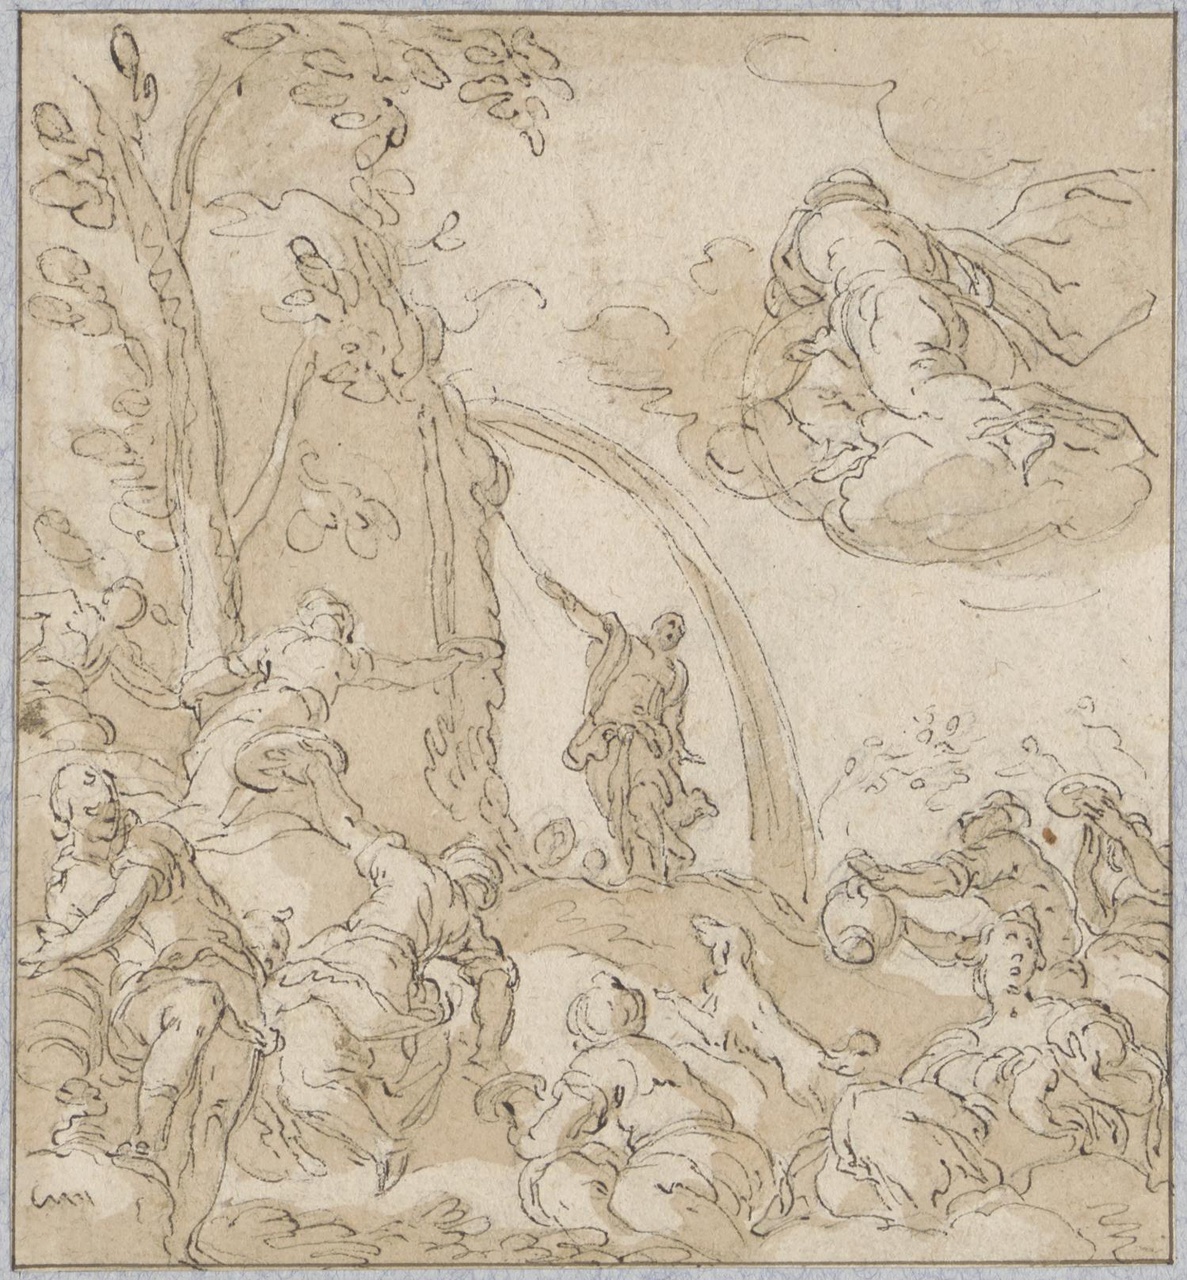 Mozes slaat water uit de rots; verso: Twee vrouwenfiguren